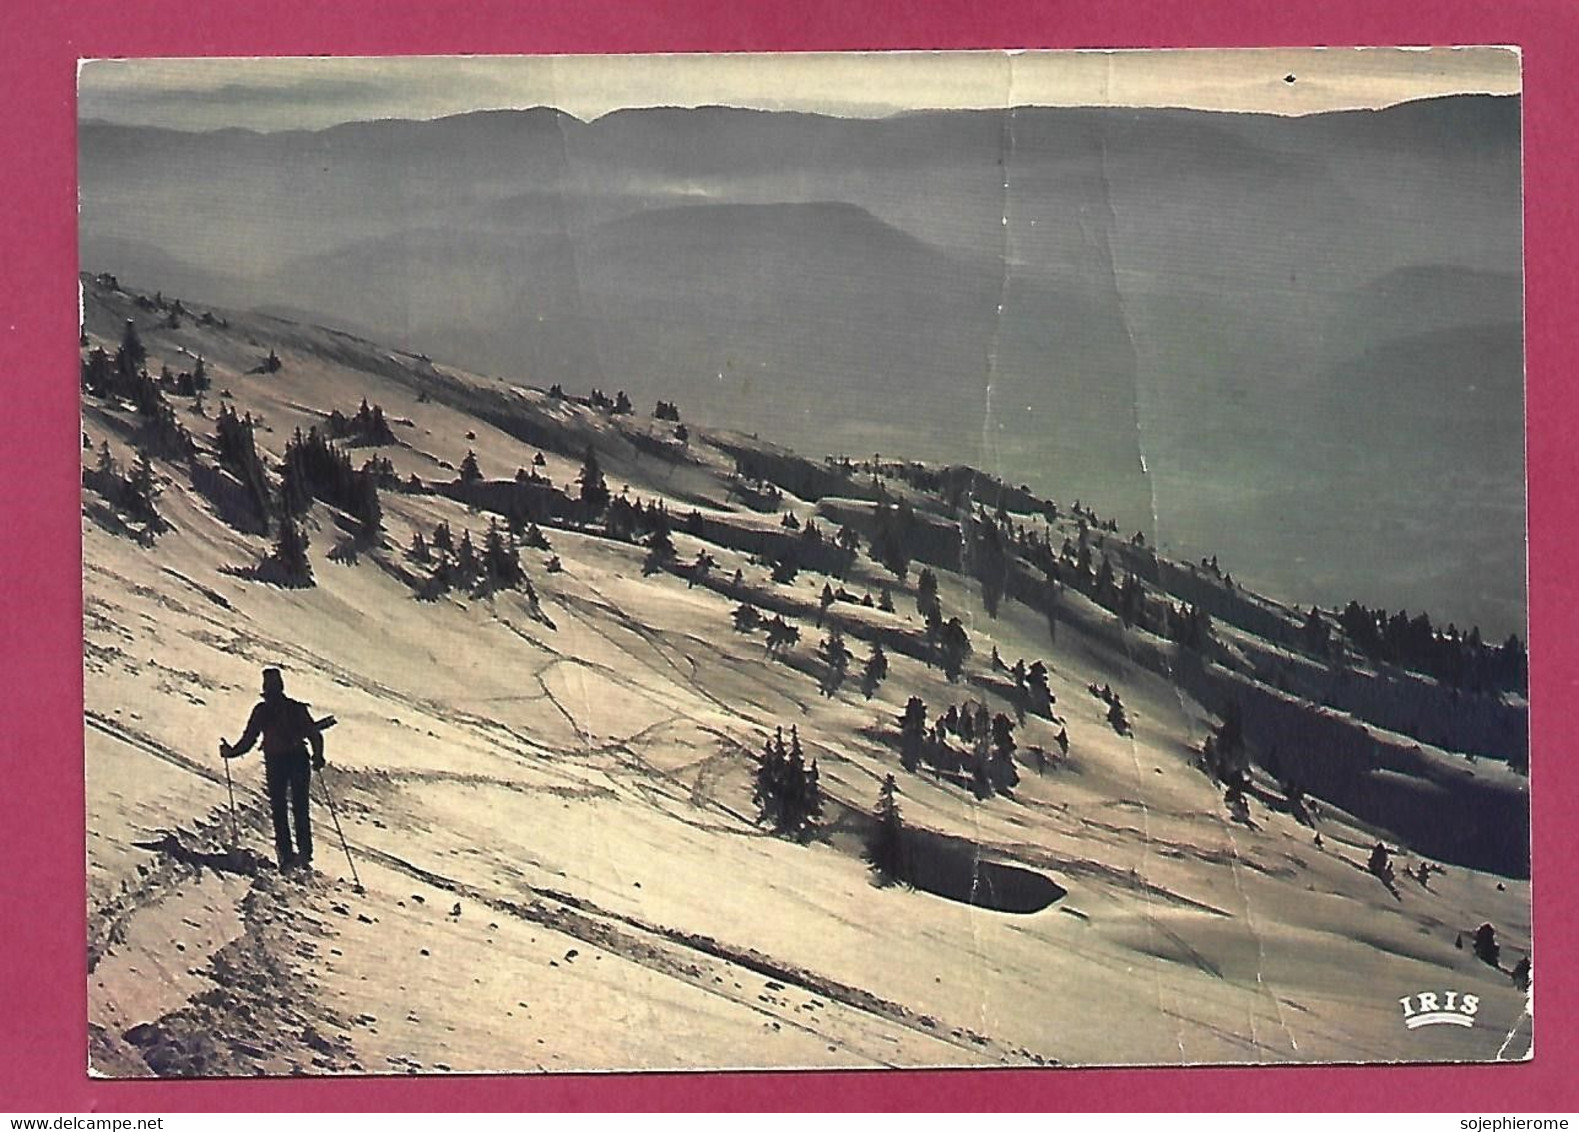 Ambiance Hivernale Ski De Fond 2scans Cachet Et Flamme De Chamonix-Mont-Blanc 01-02-1982 - Sports D'hiver